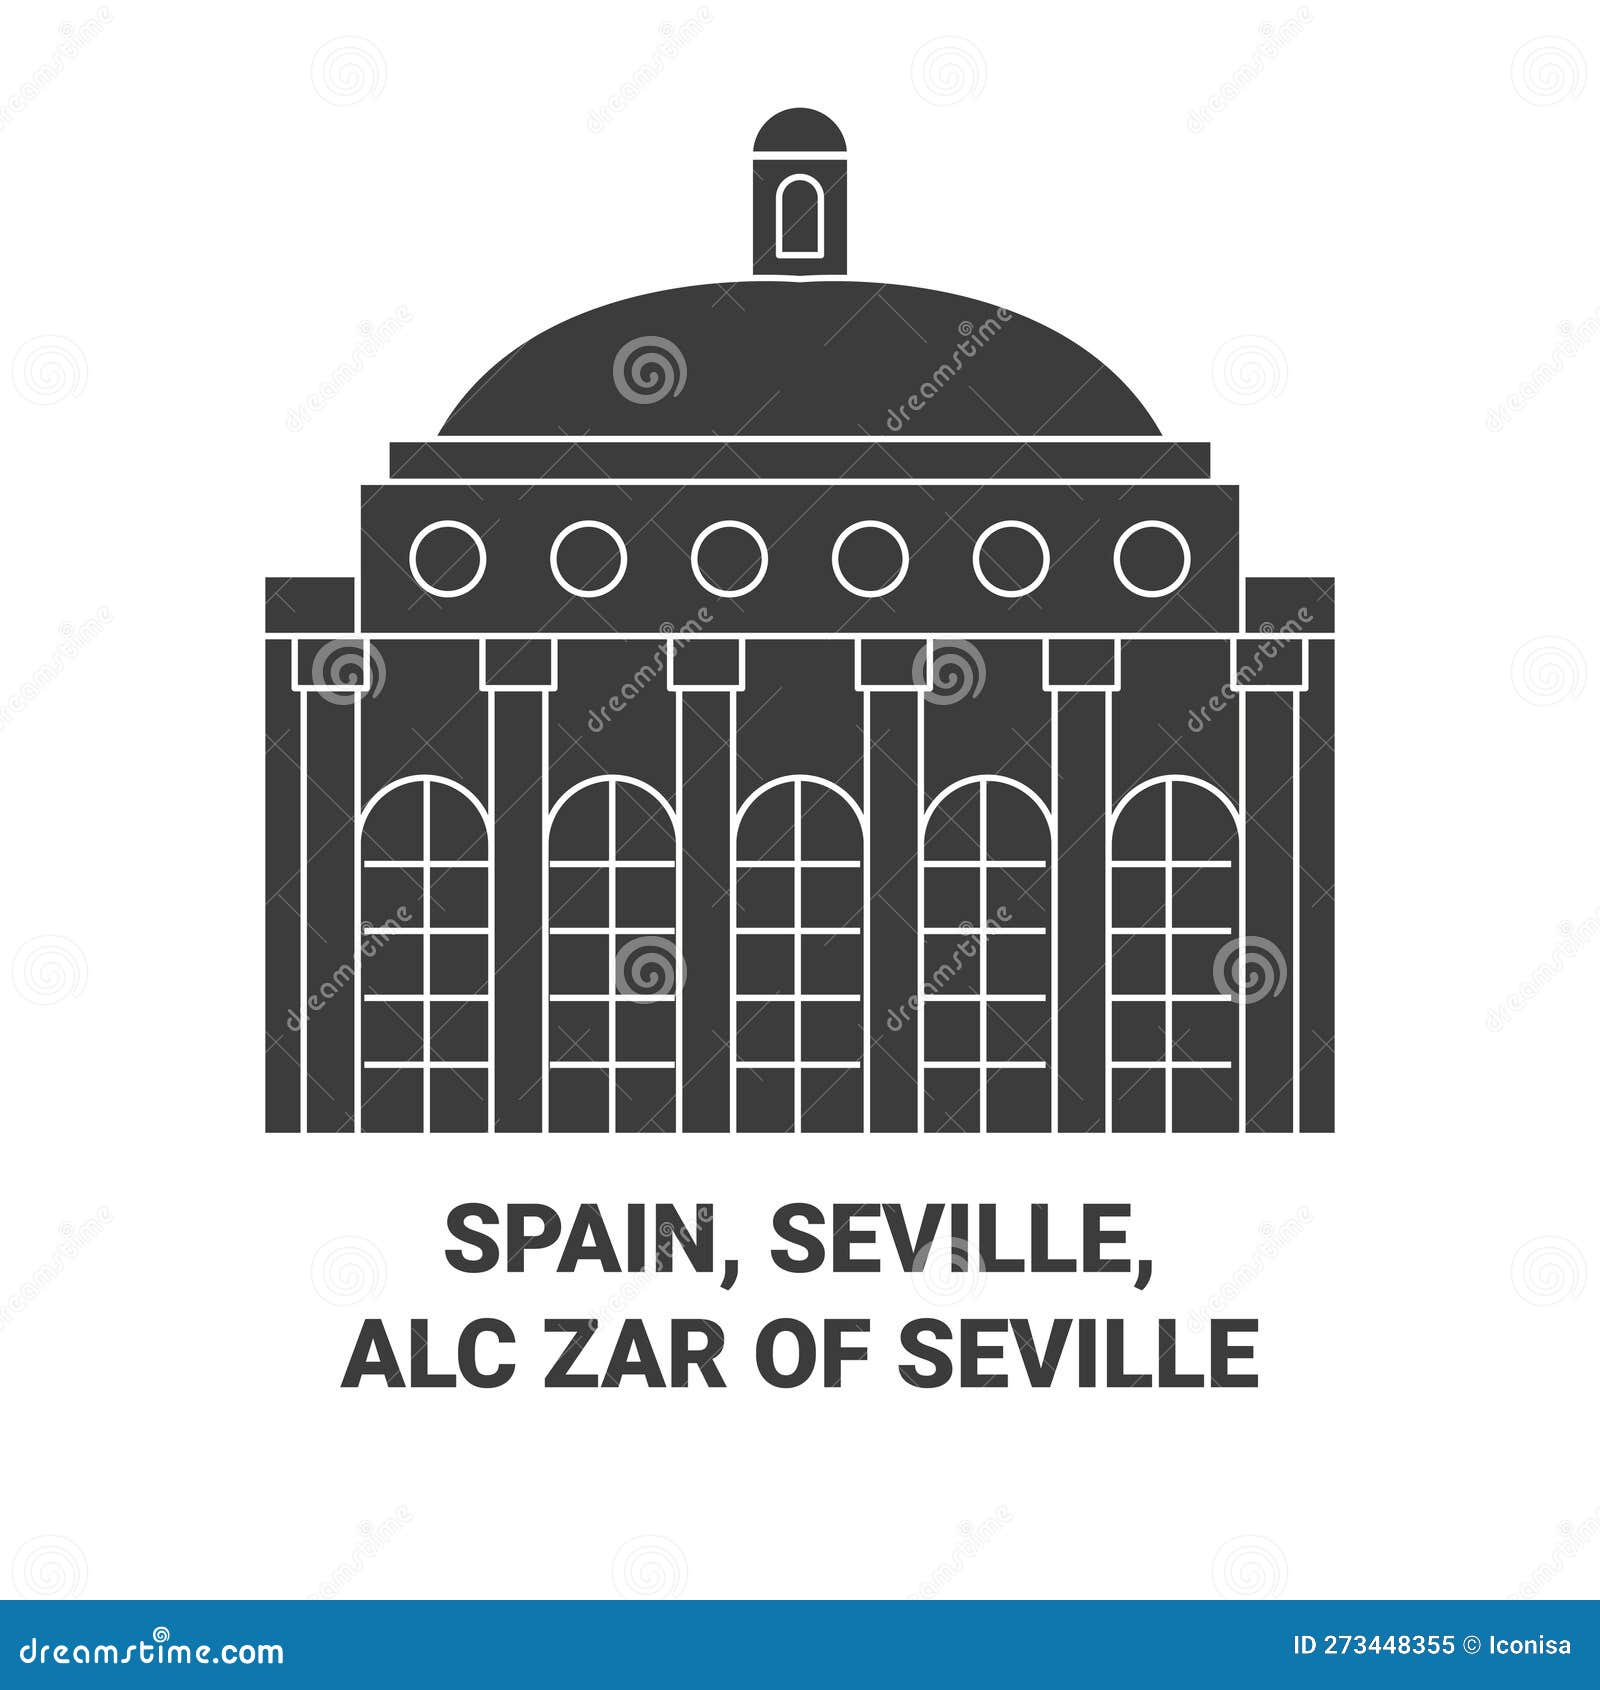 spain, seville, alczar of seville travel landmark  